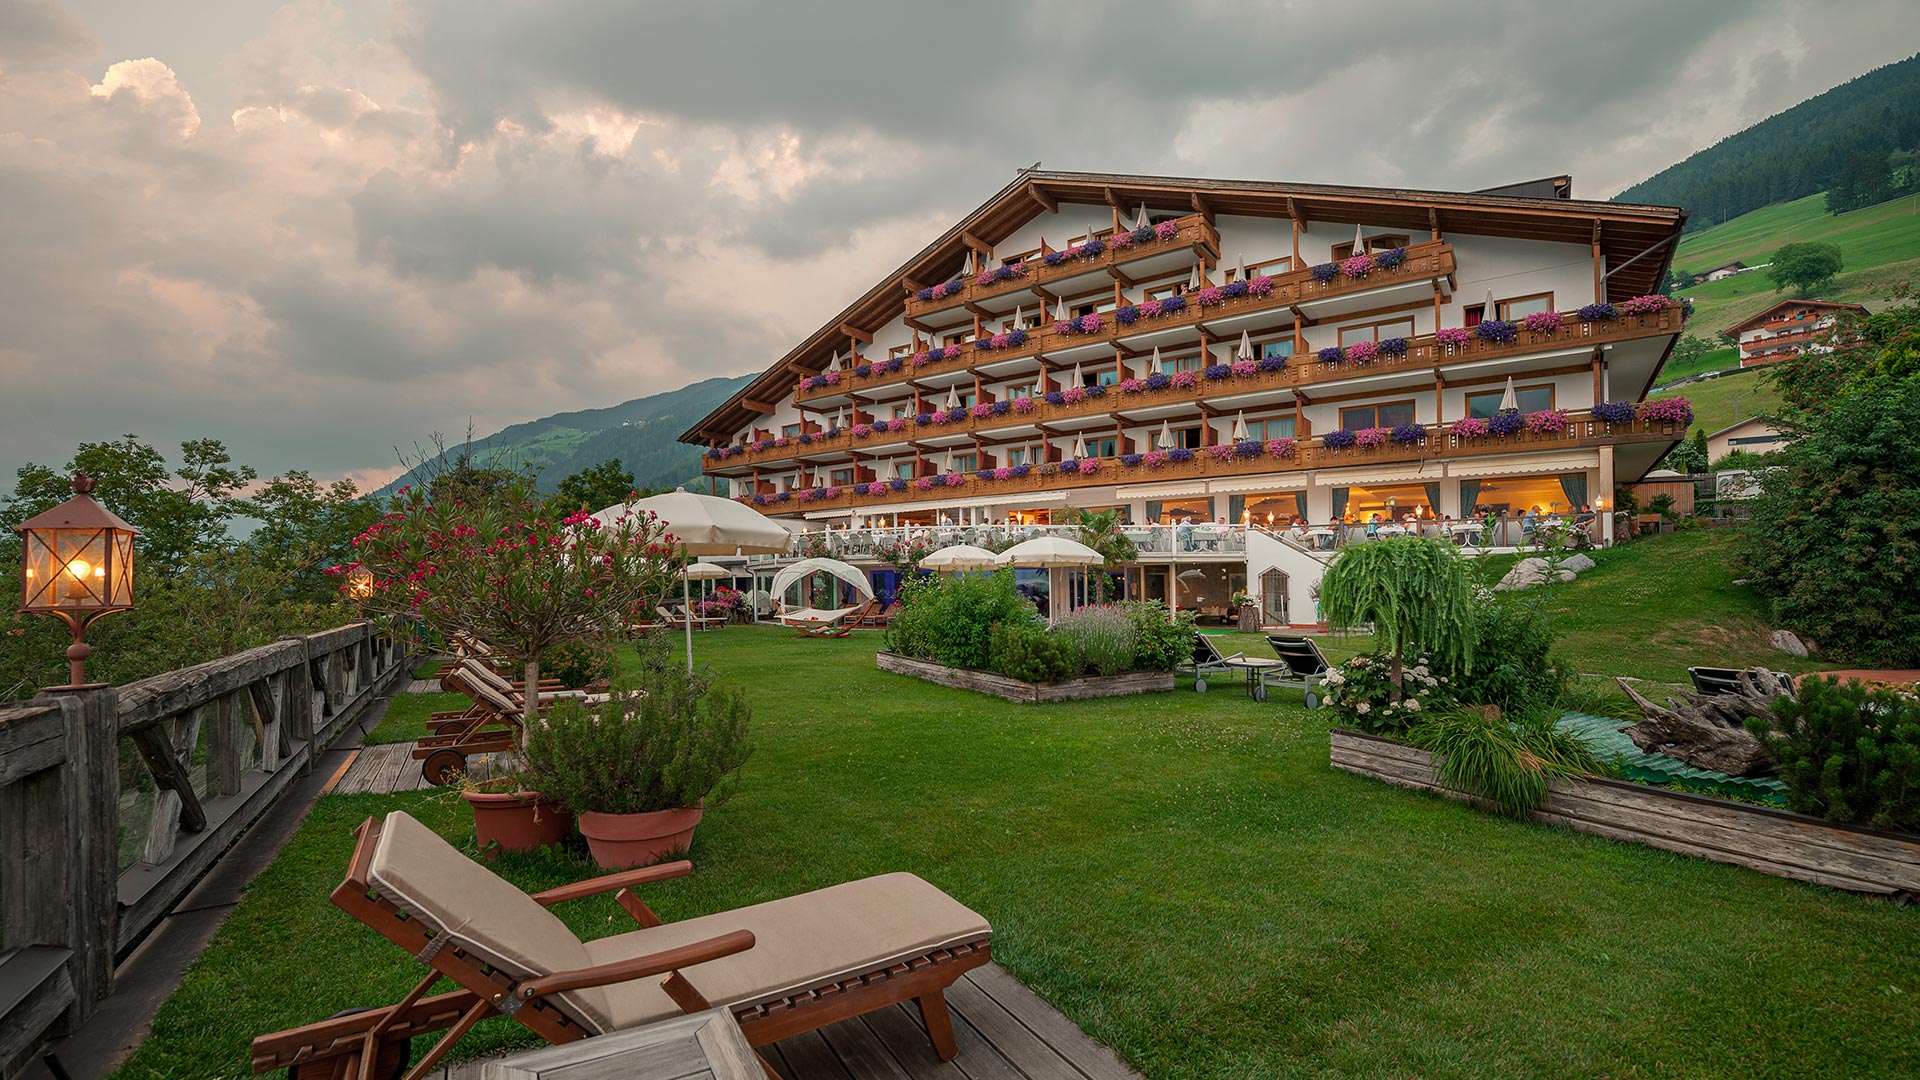 Unser 4-Sterne-Hotel in Schenna, Meran, macht Ihren Aufenthalt zu einem unwiderstehlichen Wellness-Erlebnis, um dem Alltag zu entfliehen.